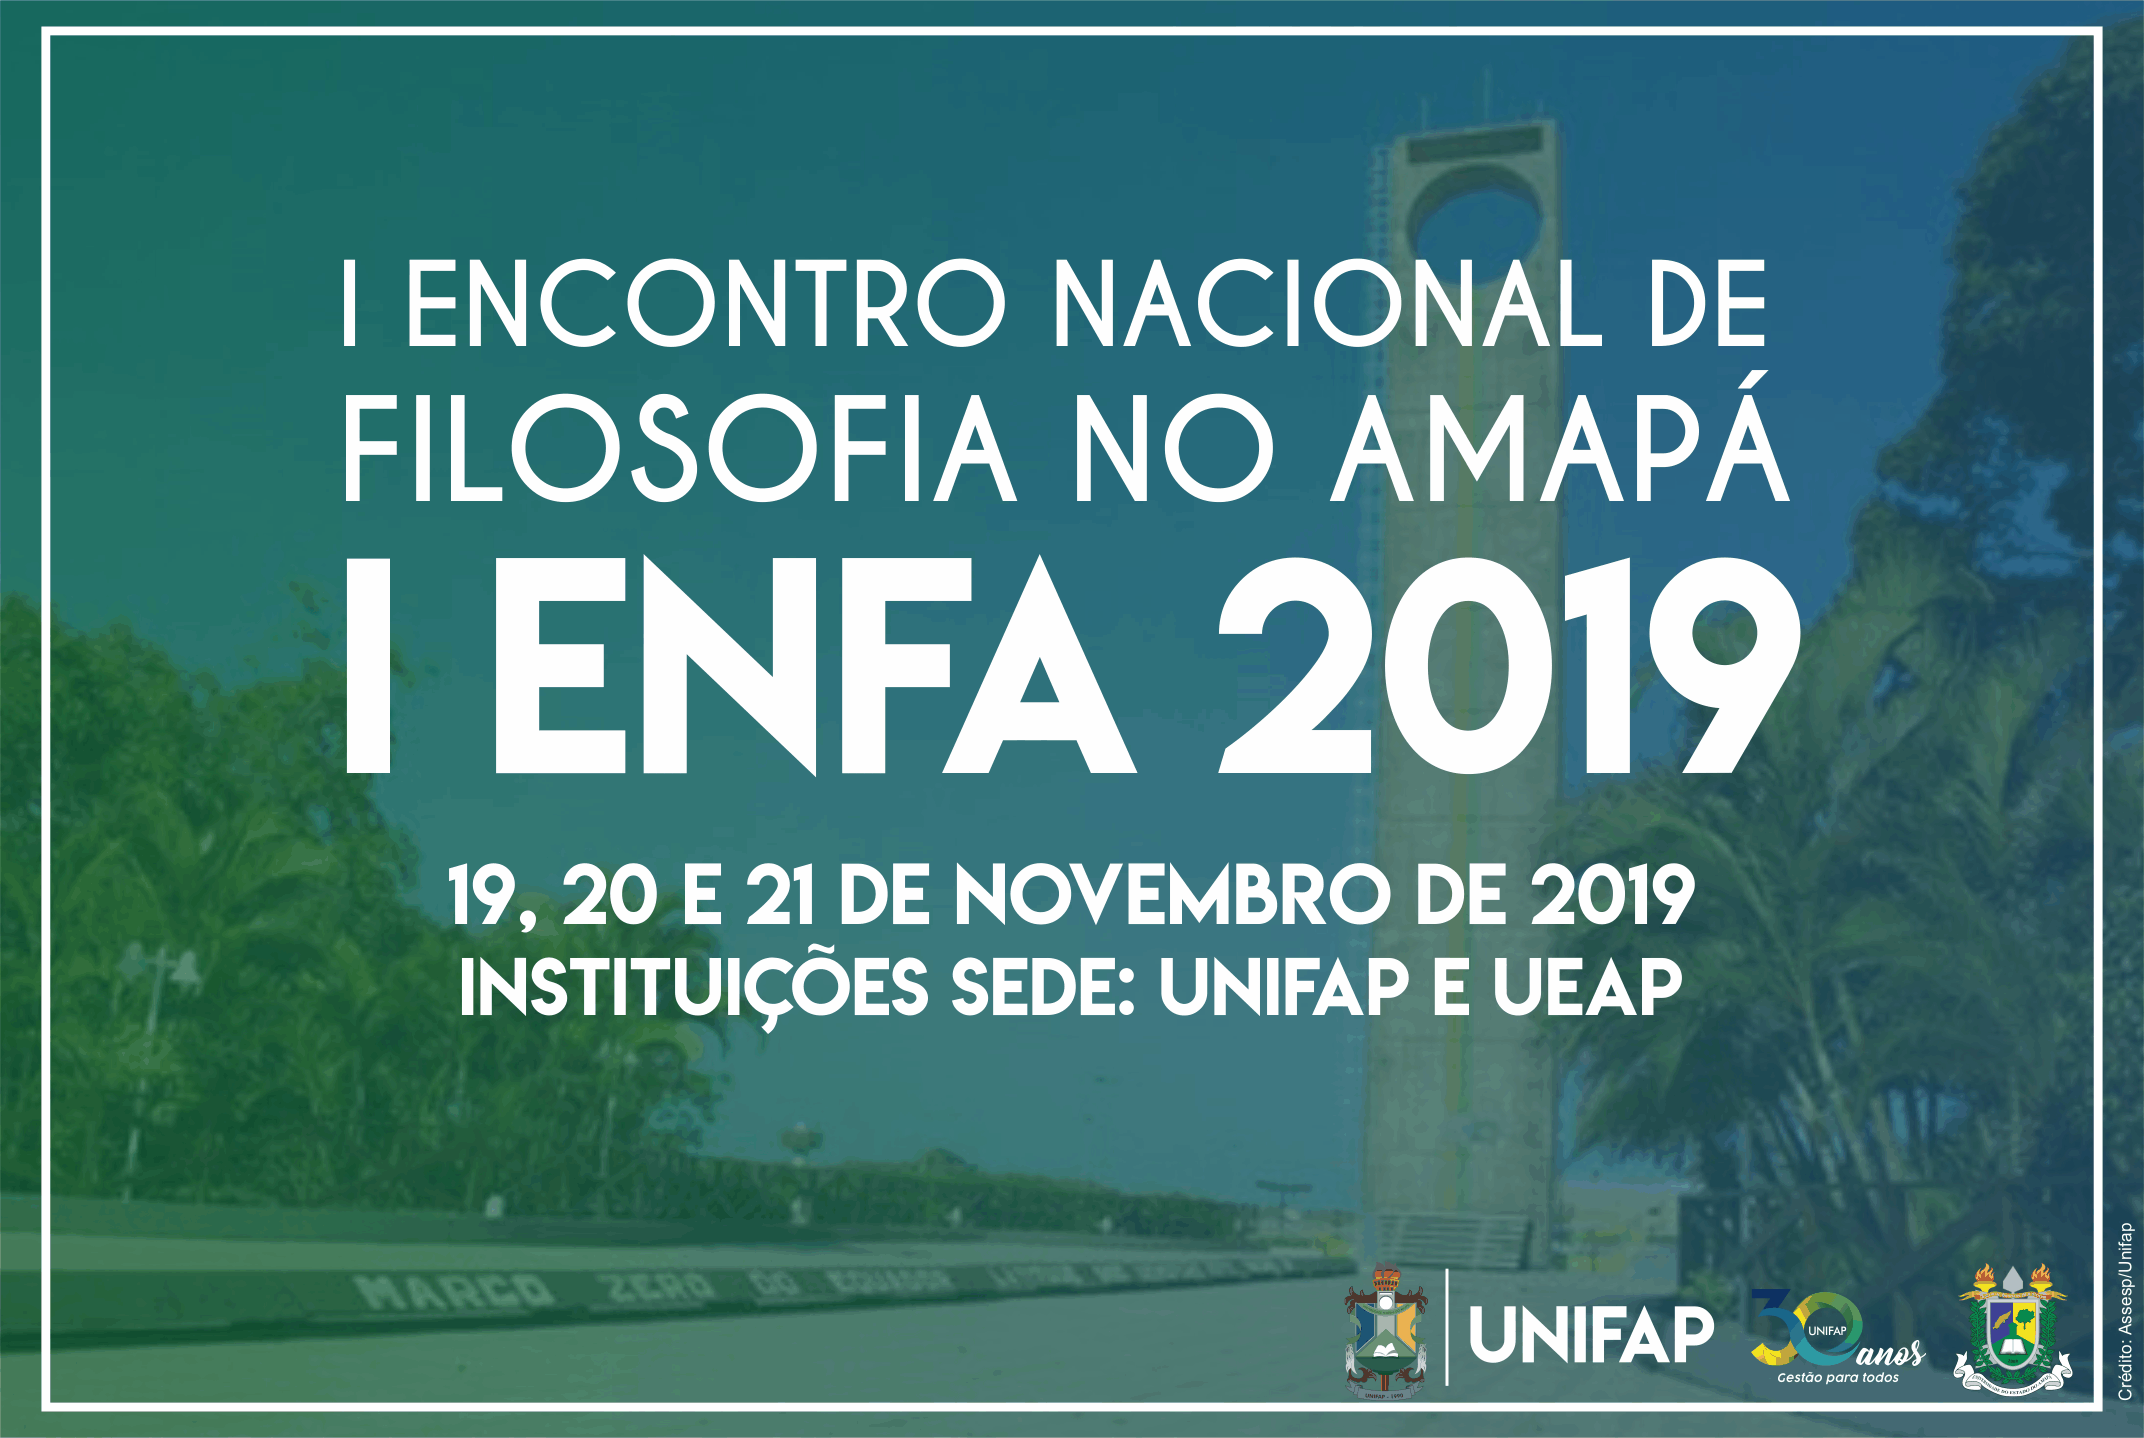 UNIFAP e UEAP promovem 1º Encontro Nacional de Filosofia do Amapá